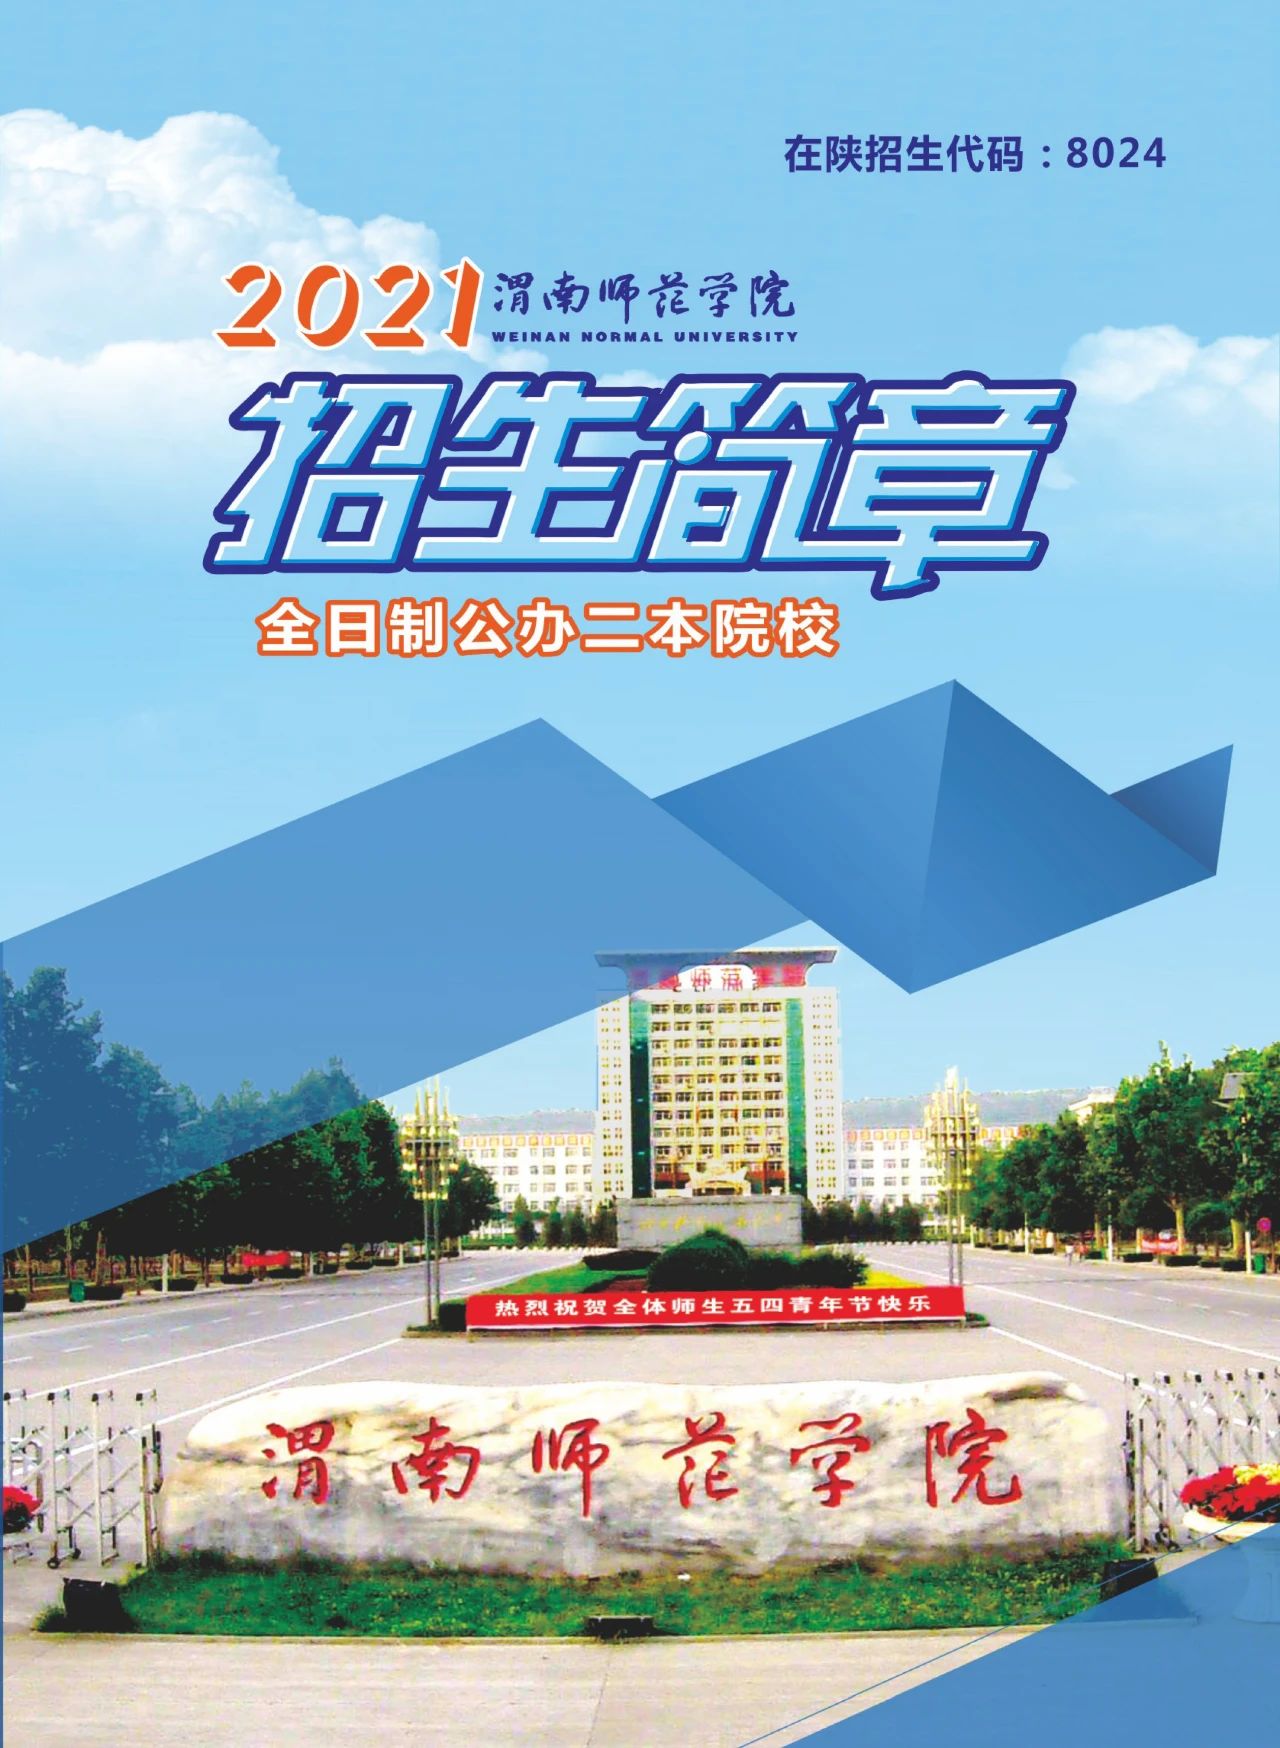 2021年渭南师范学院招生简章